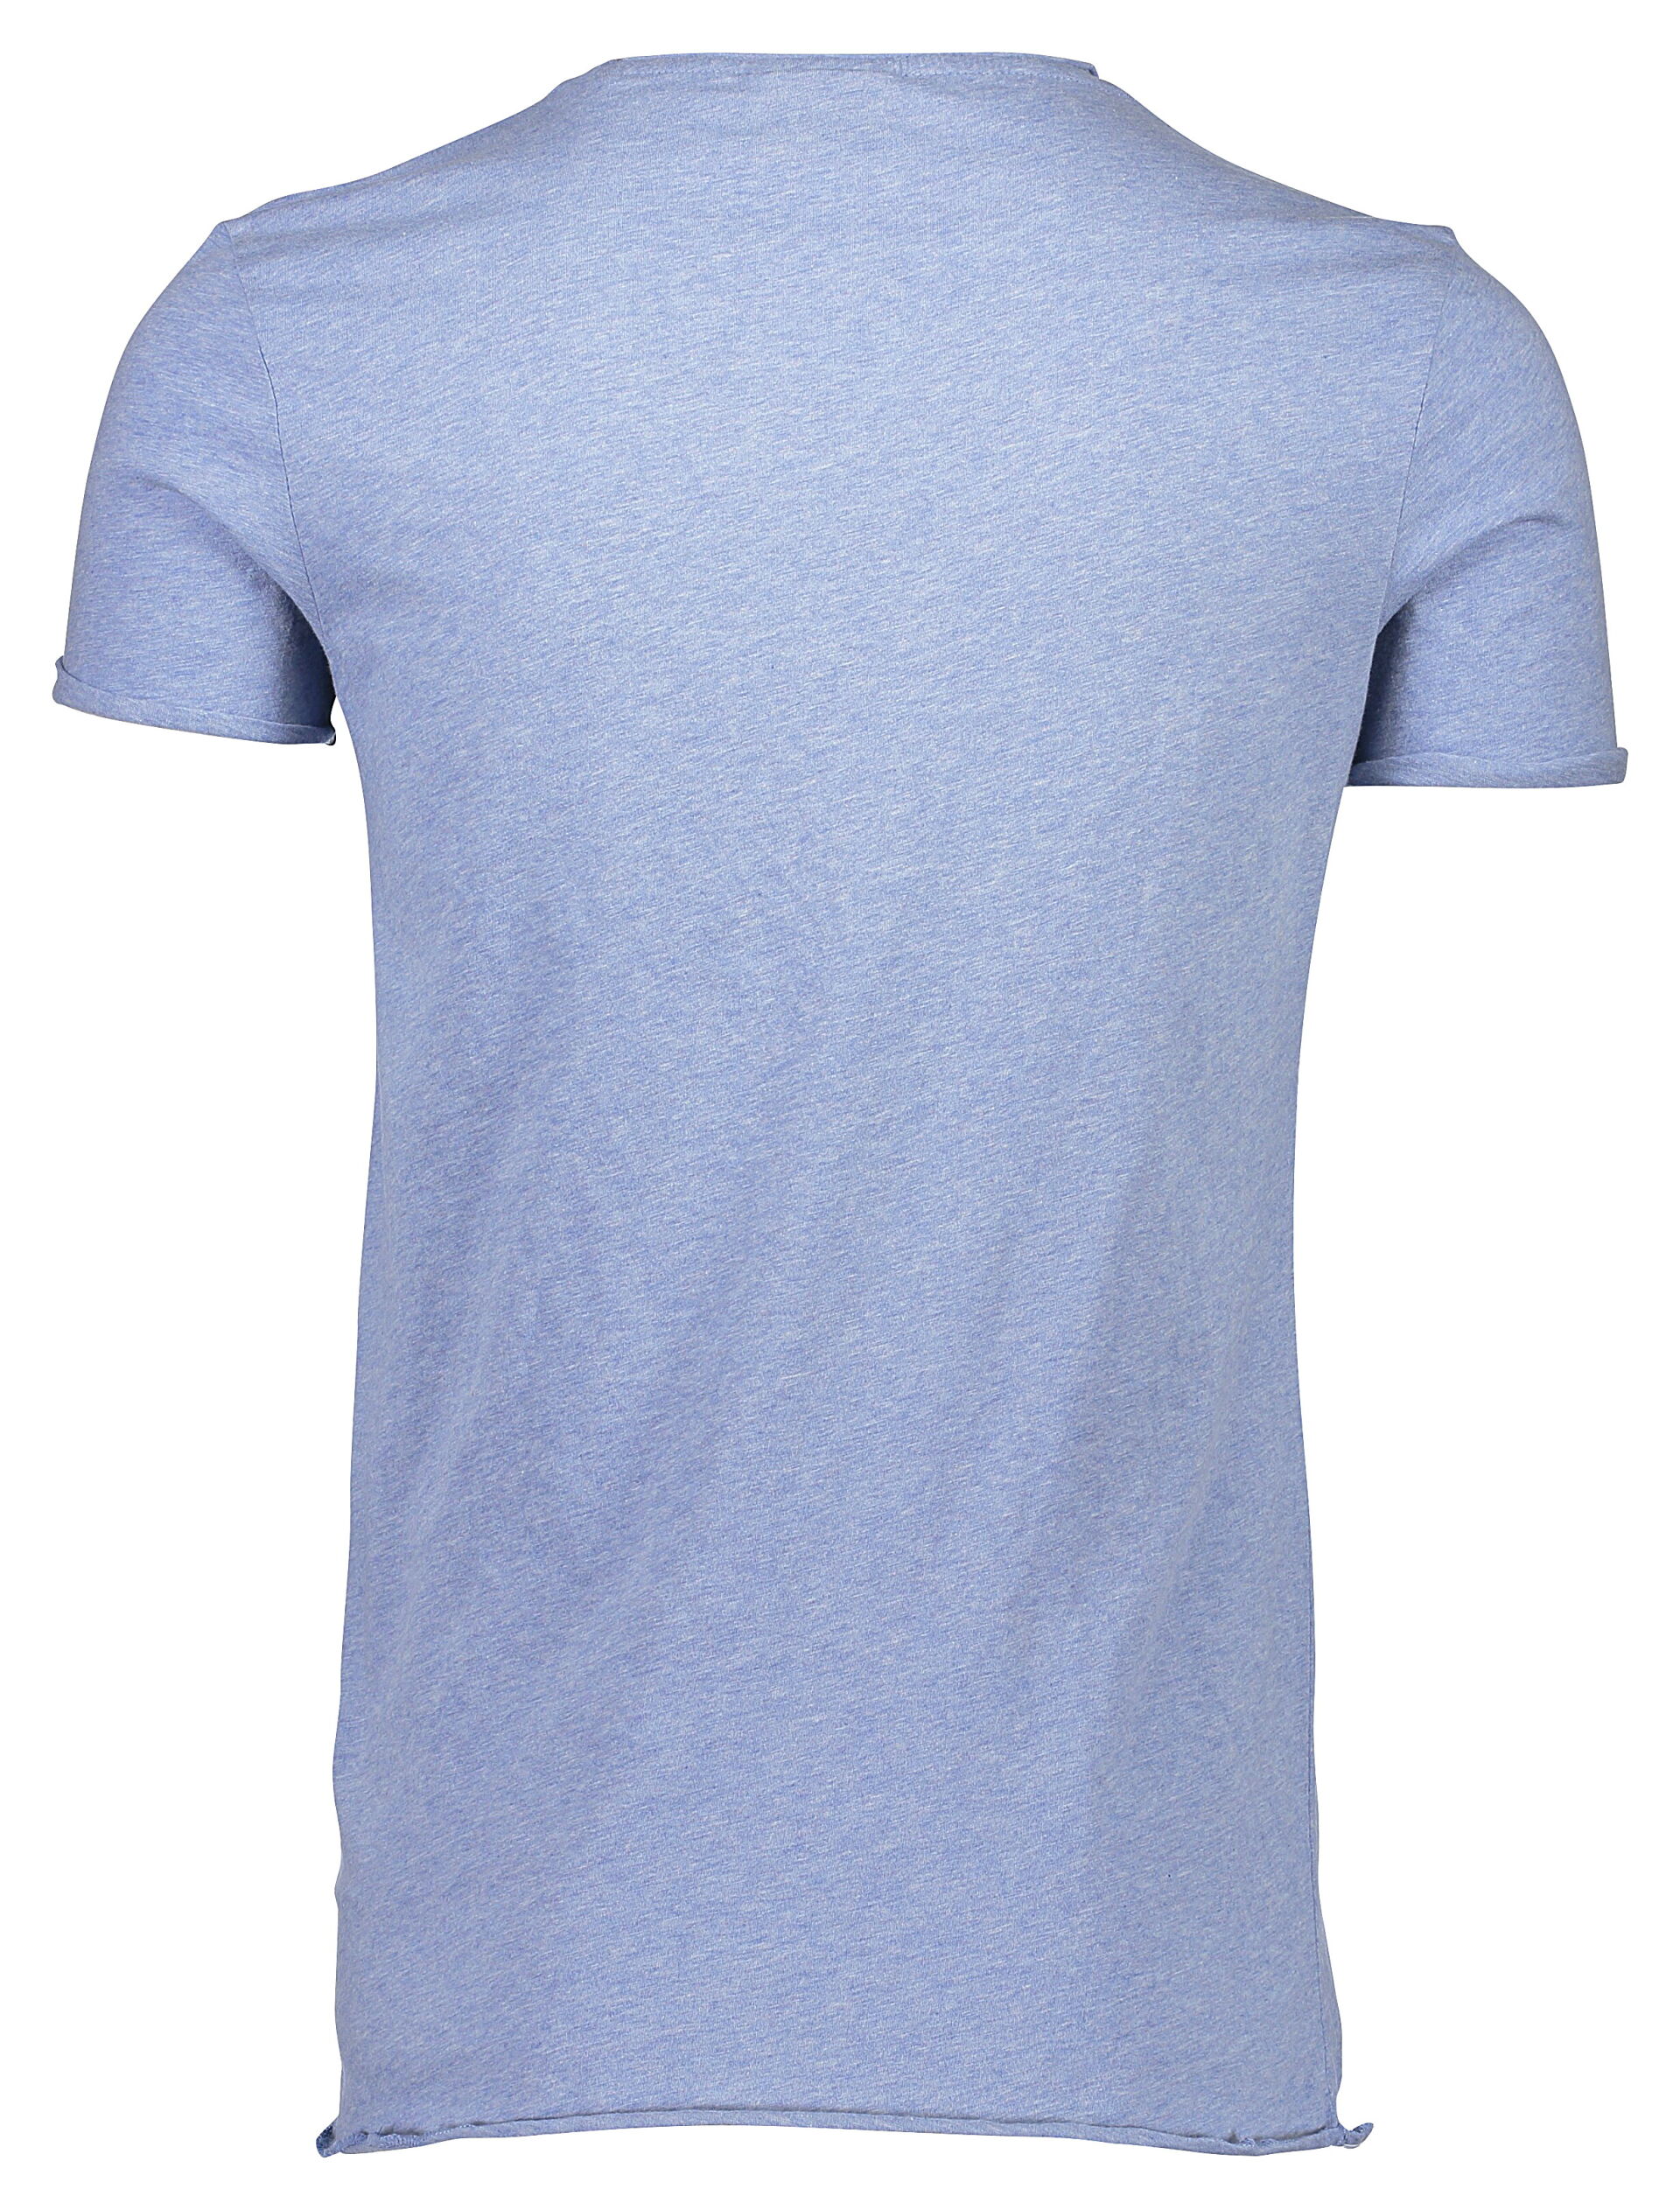 Junk de Luxe  T-shirt 60-40002